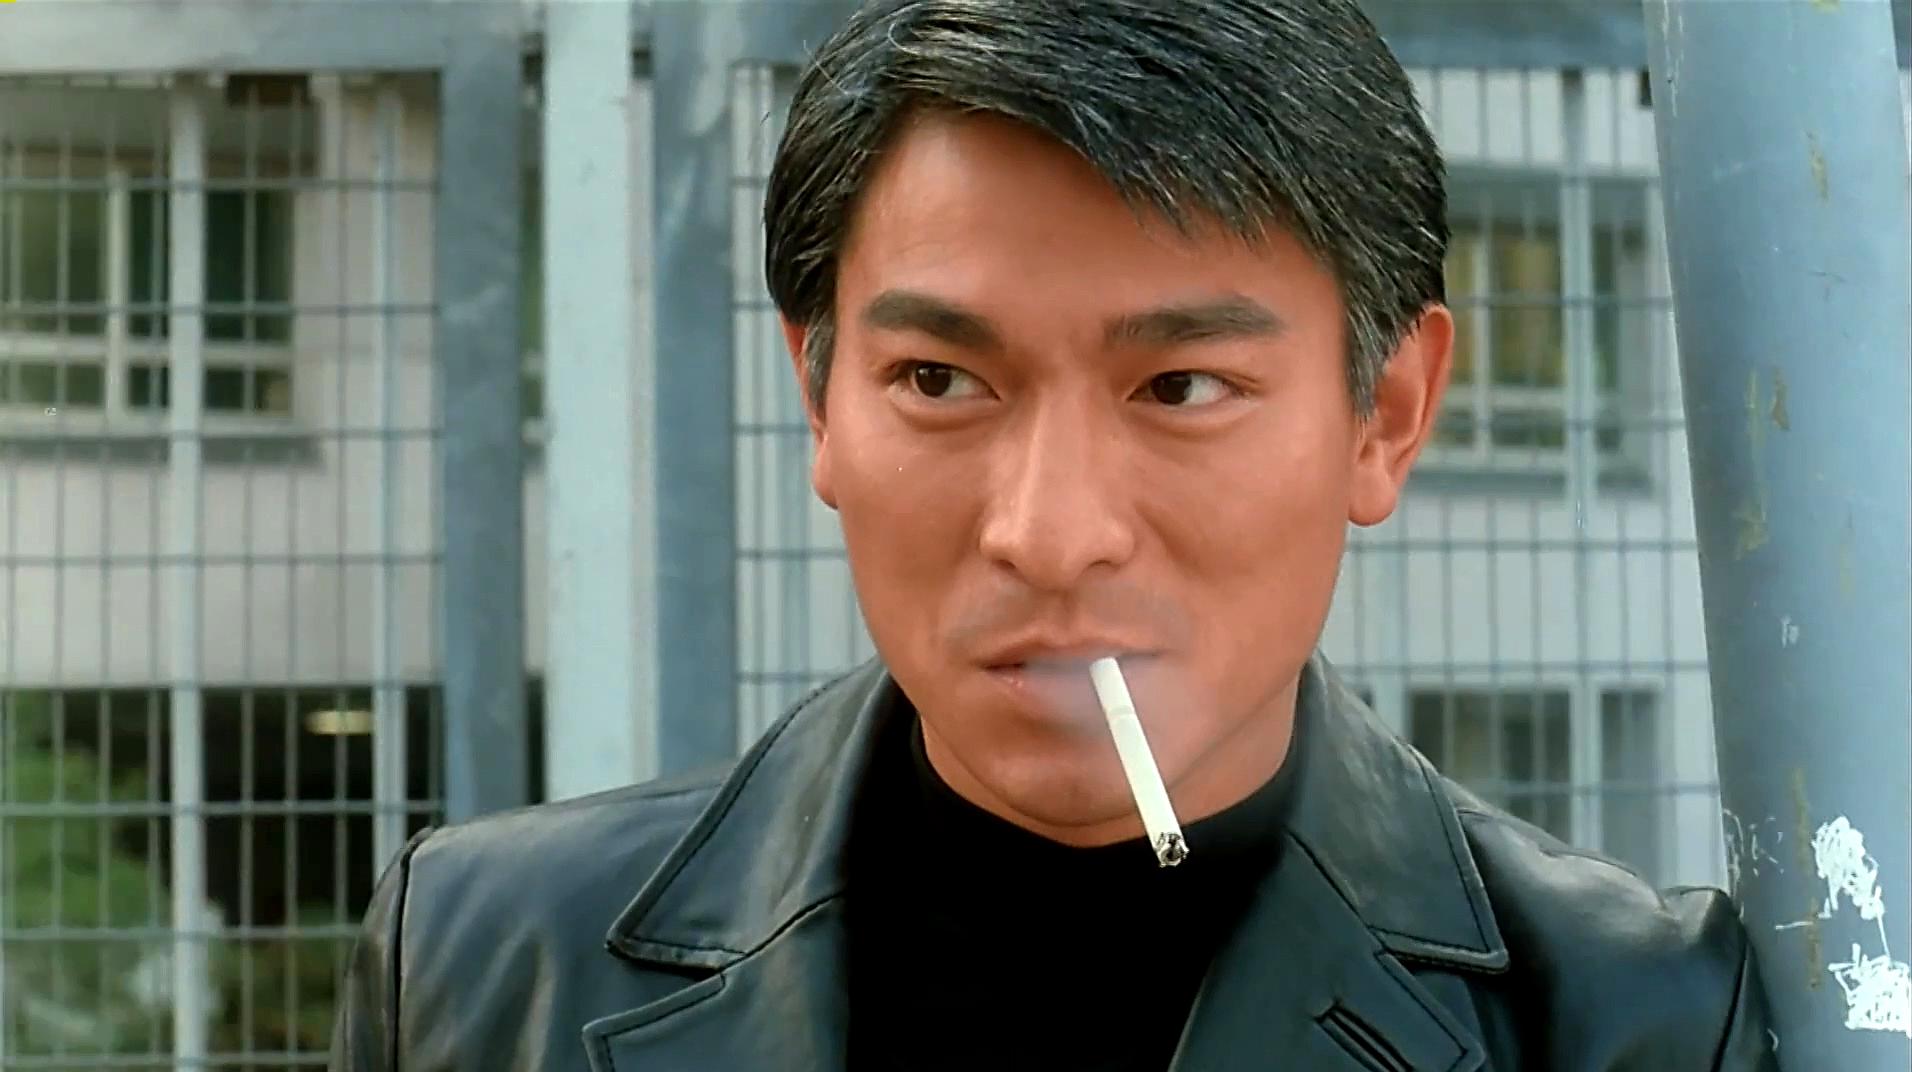 赌侠1999:刘德华最帅抽烟片段在这里,真乃百看不厌!超赞!